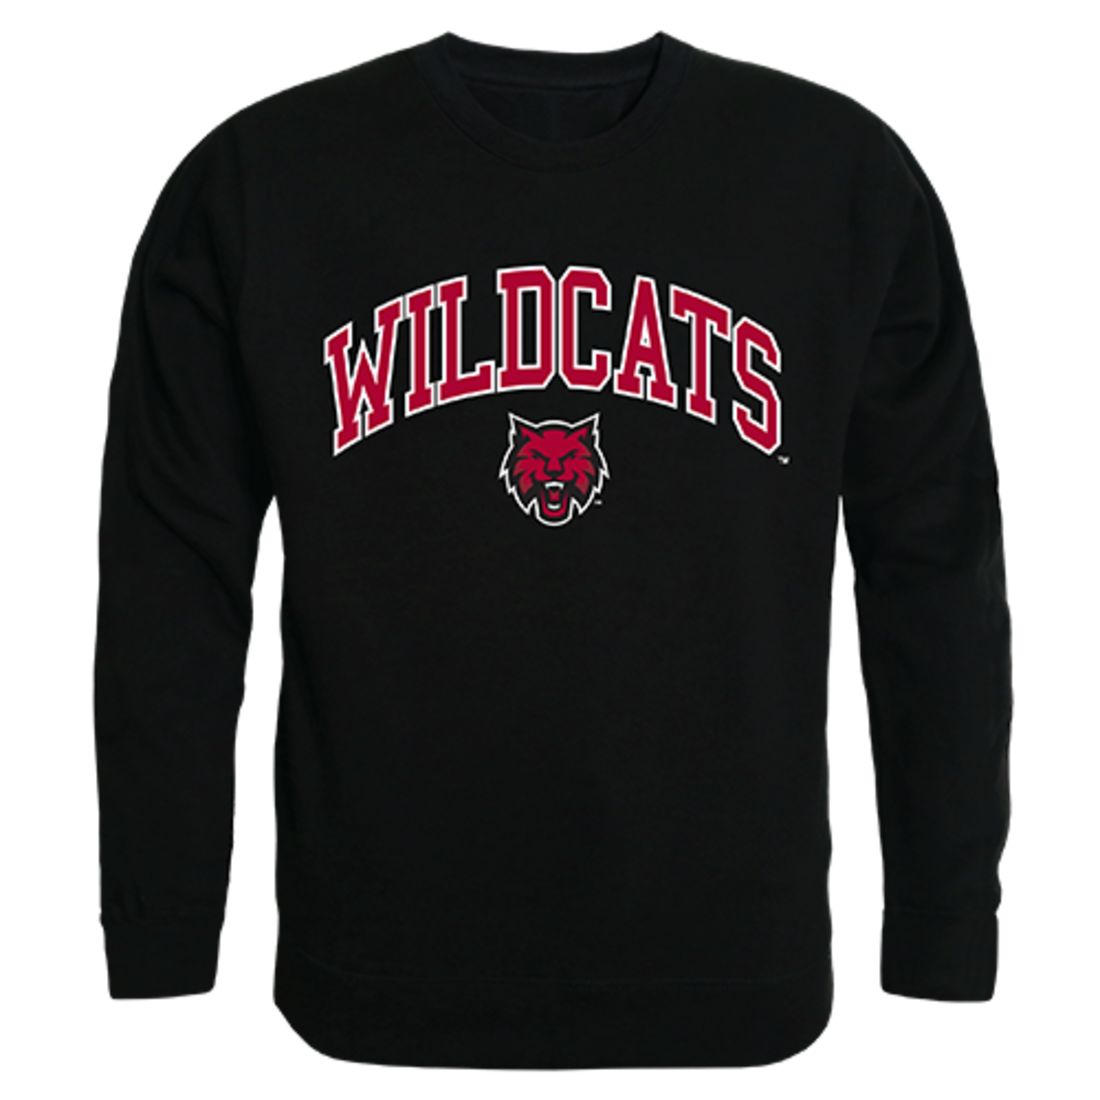 CWU Central Washington University Campus Crewneck Pullover Sweatshirt Sweater Black-Campus-Wardrobe